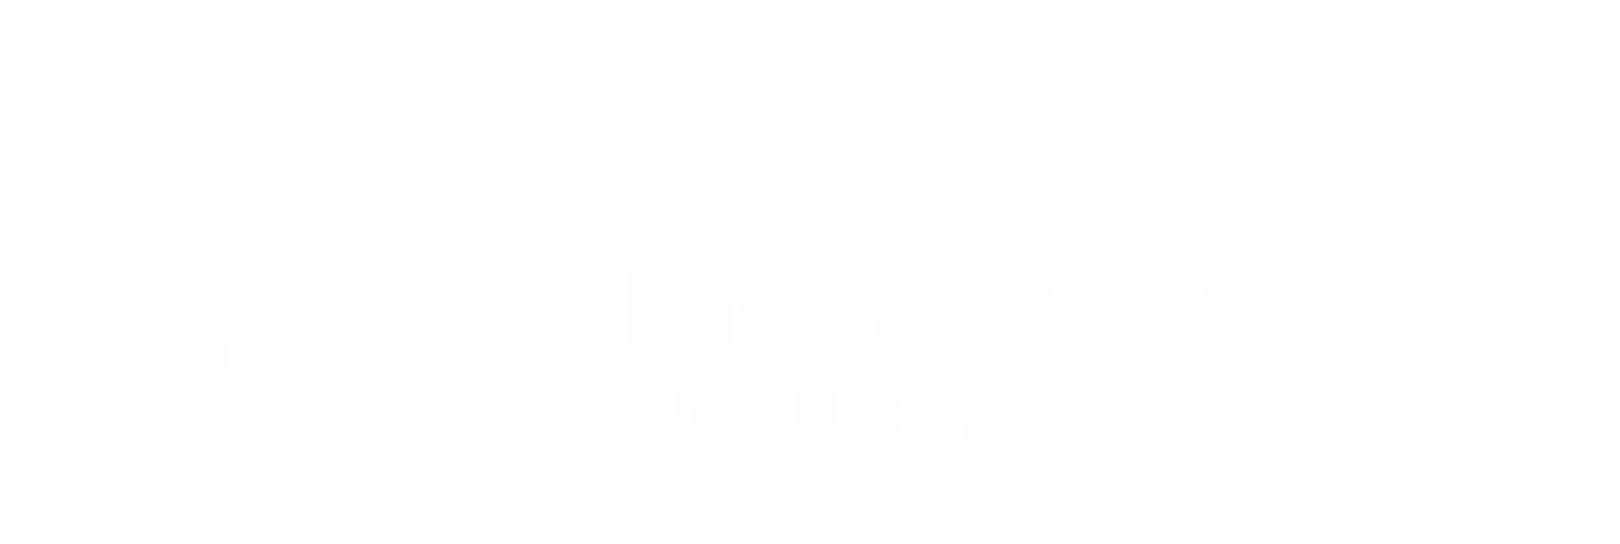 Siggraph Immersive Pavilion Showcase